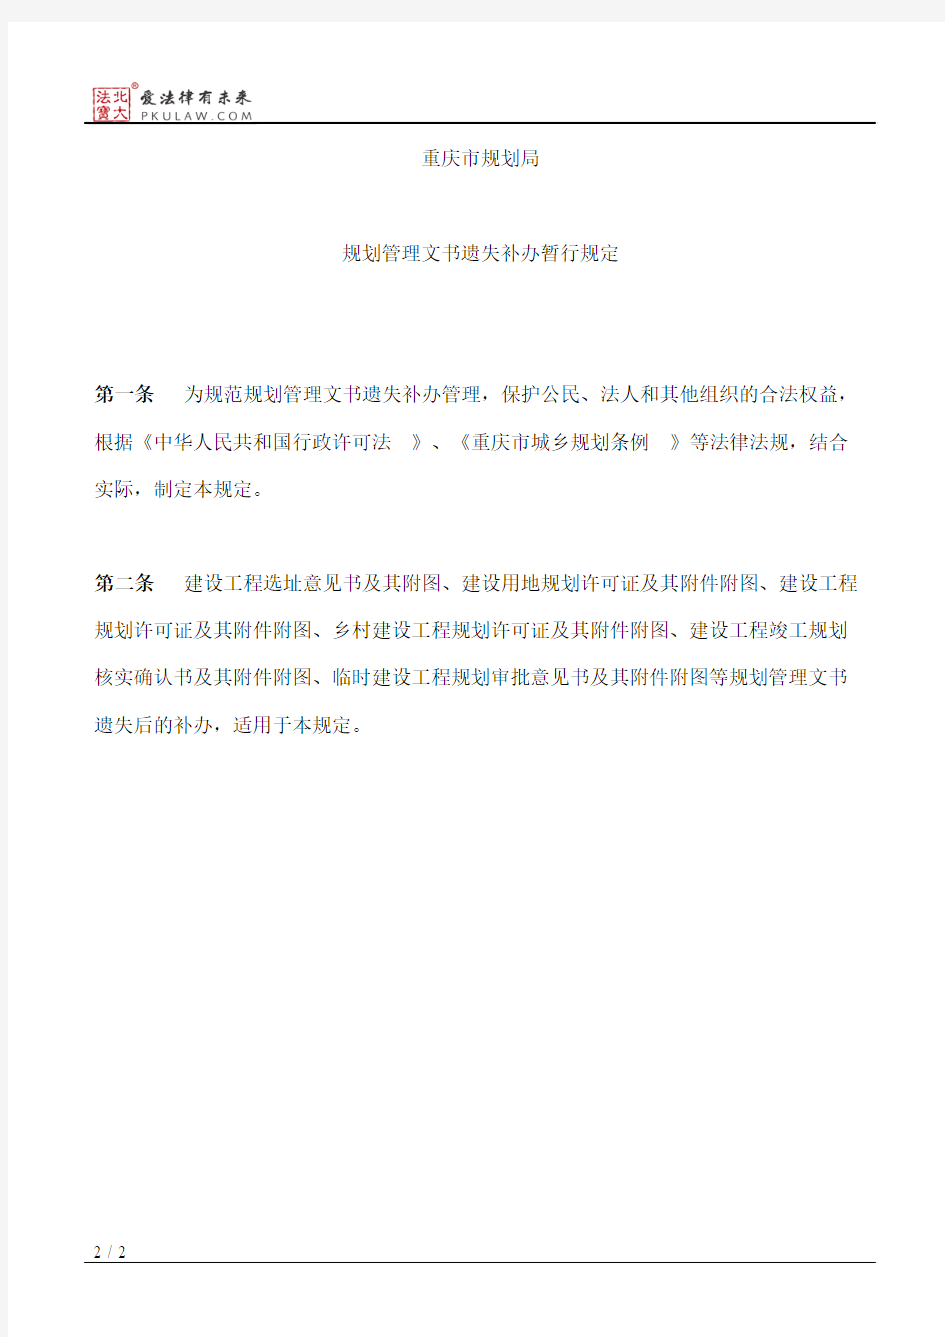 重庆市规划局关于印发《重庆市规划局规划管理文书遗失补办暂行规